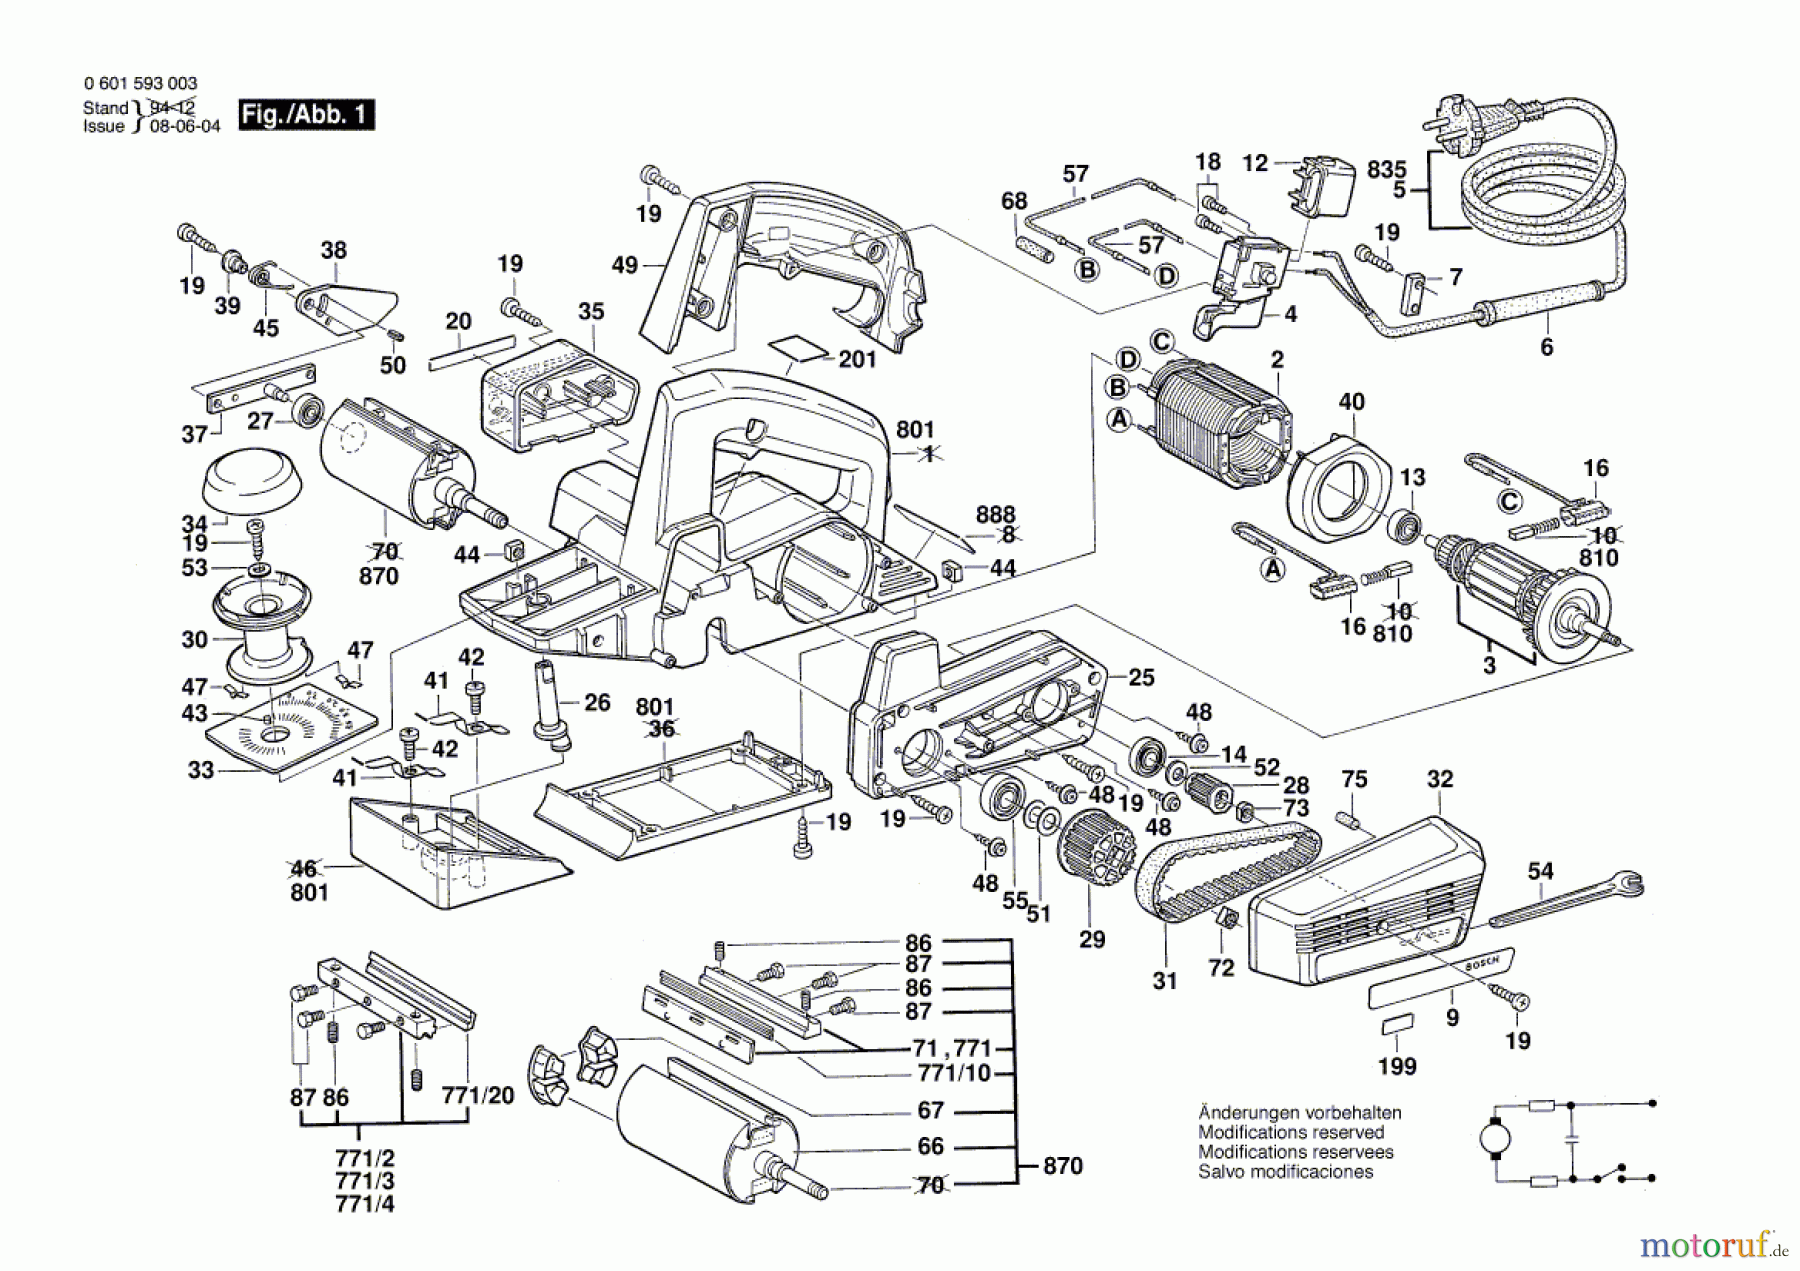  Bosch Werkzeug Handhobel GHO 31-82 Seite 1